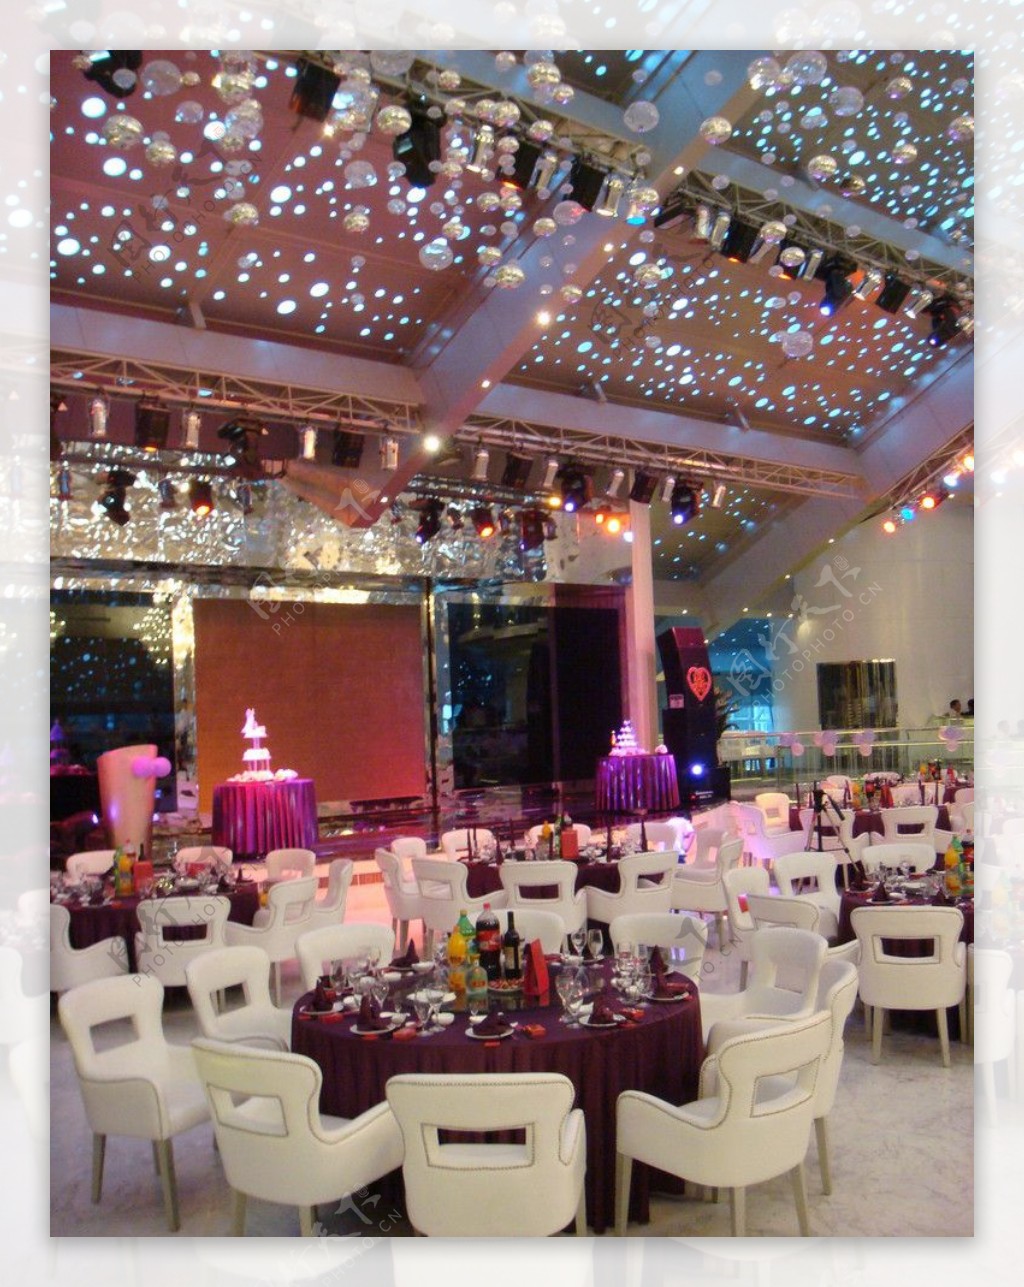 婚礼现场桌子椅子花柱紫色桌布吊灯满天星图片